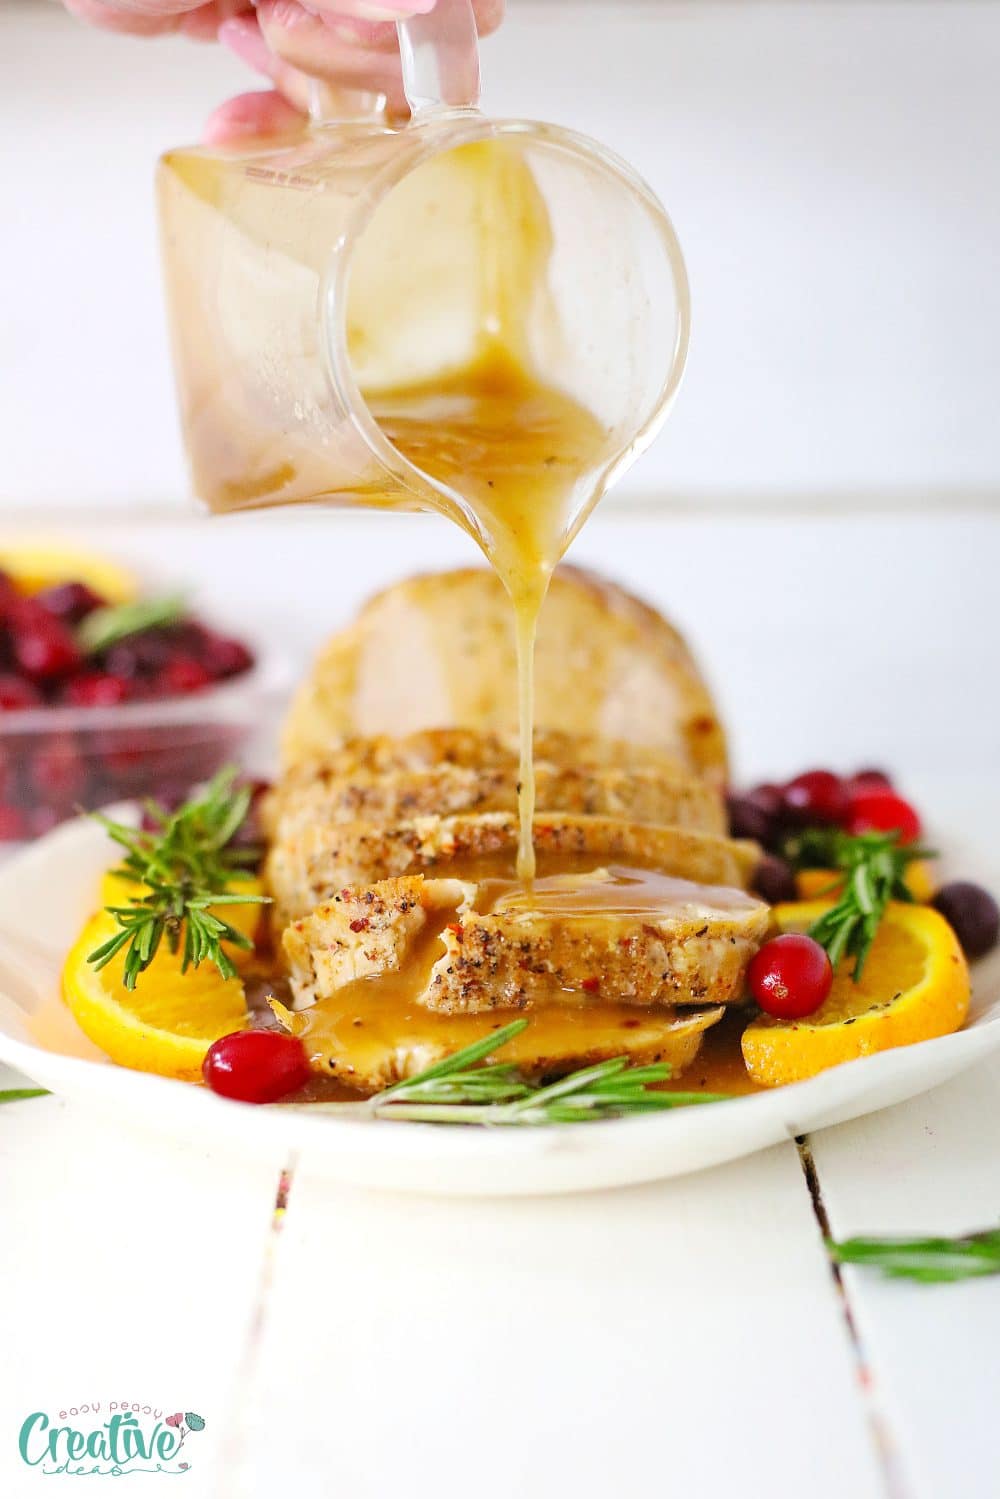 Slow cooker turkey breast recipe